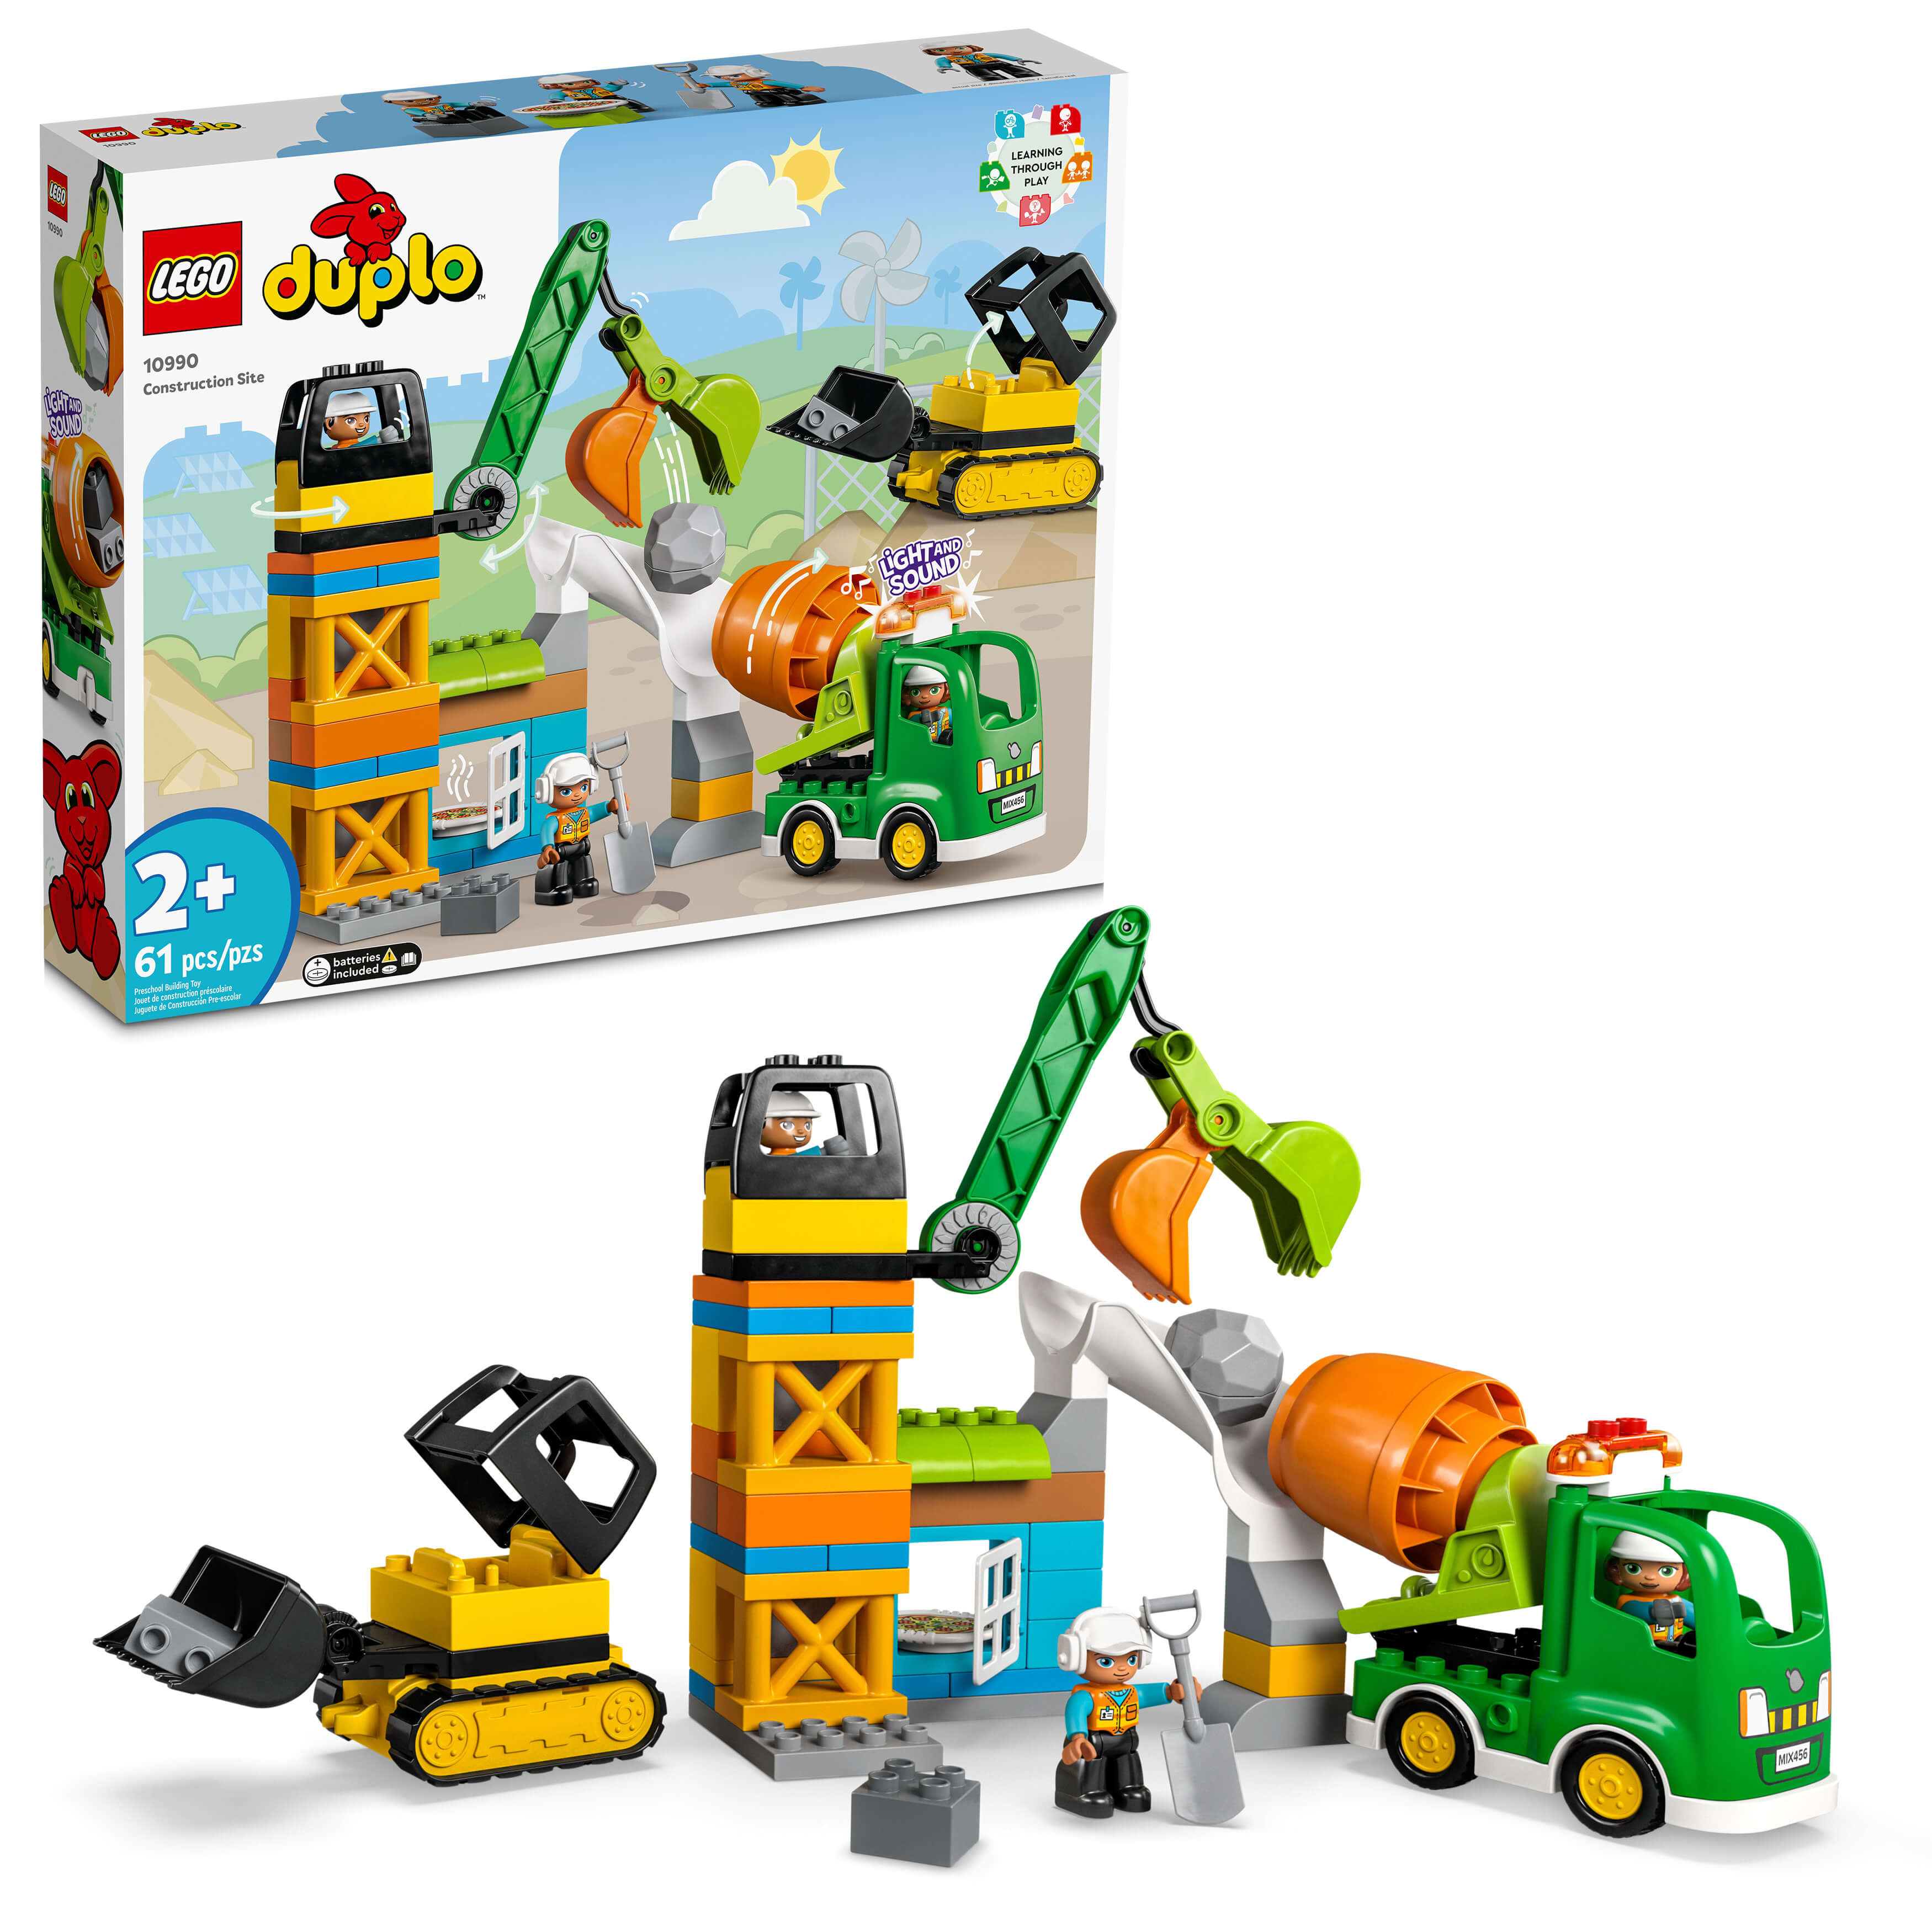 LEGO®  DUPLO® Town Construction Site 10990 Building Toy Set (61 Pieces)